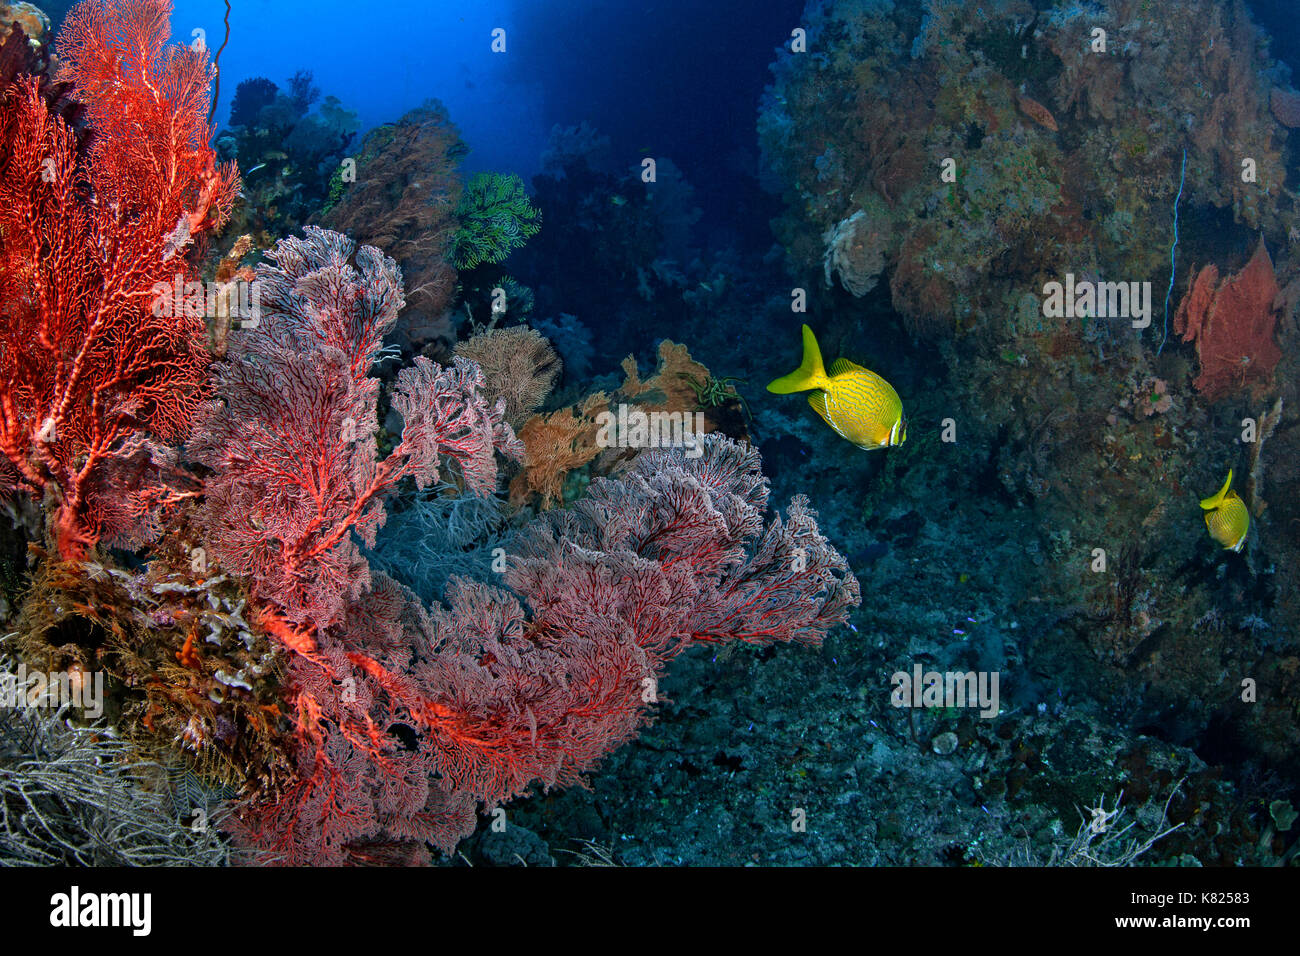 Gesunde Korallen gedeihen in Unterwasser Canyons durch konstanten Strom von Nährstoff zugeführt - reiche Wasser. Raja Ampat, Indonesien. Stockfoto